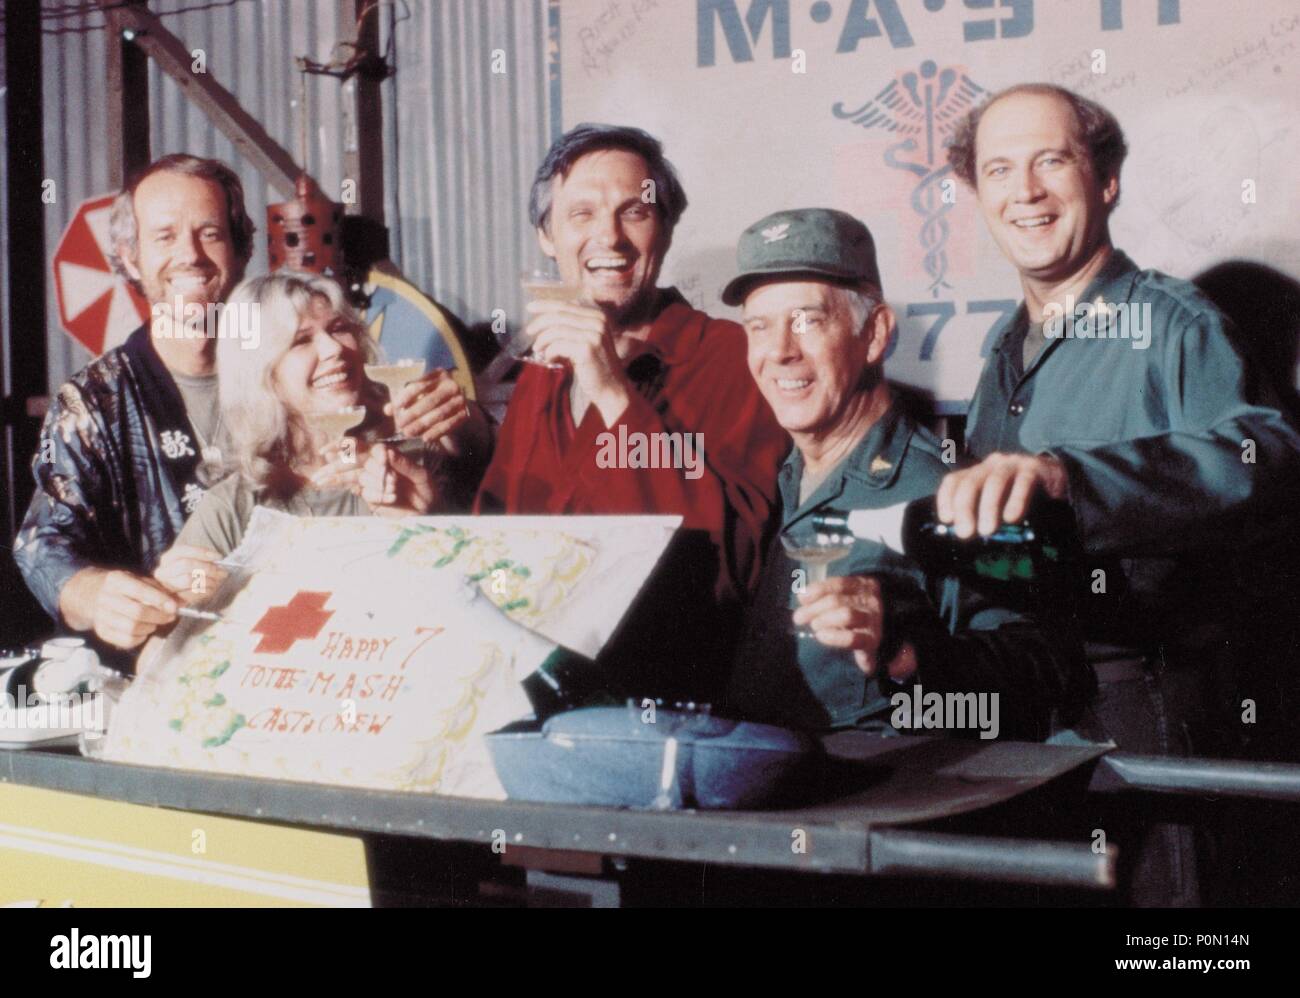 Original Film Titel: M*A*S*H. Englischer Titel: M*A*S*H. Jahr: 1972. Stars: Alan Alda; Harry Morgan; Loretta Swit; David Ogden Stiers. Quelle: 20th Century Fox TV/Album Stockfoto